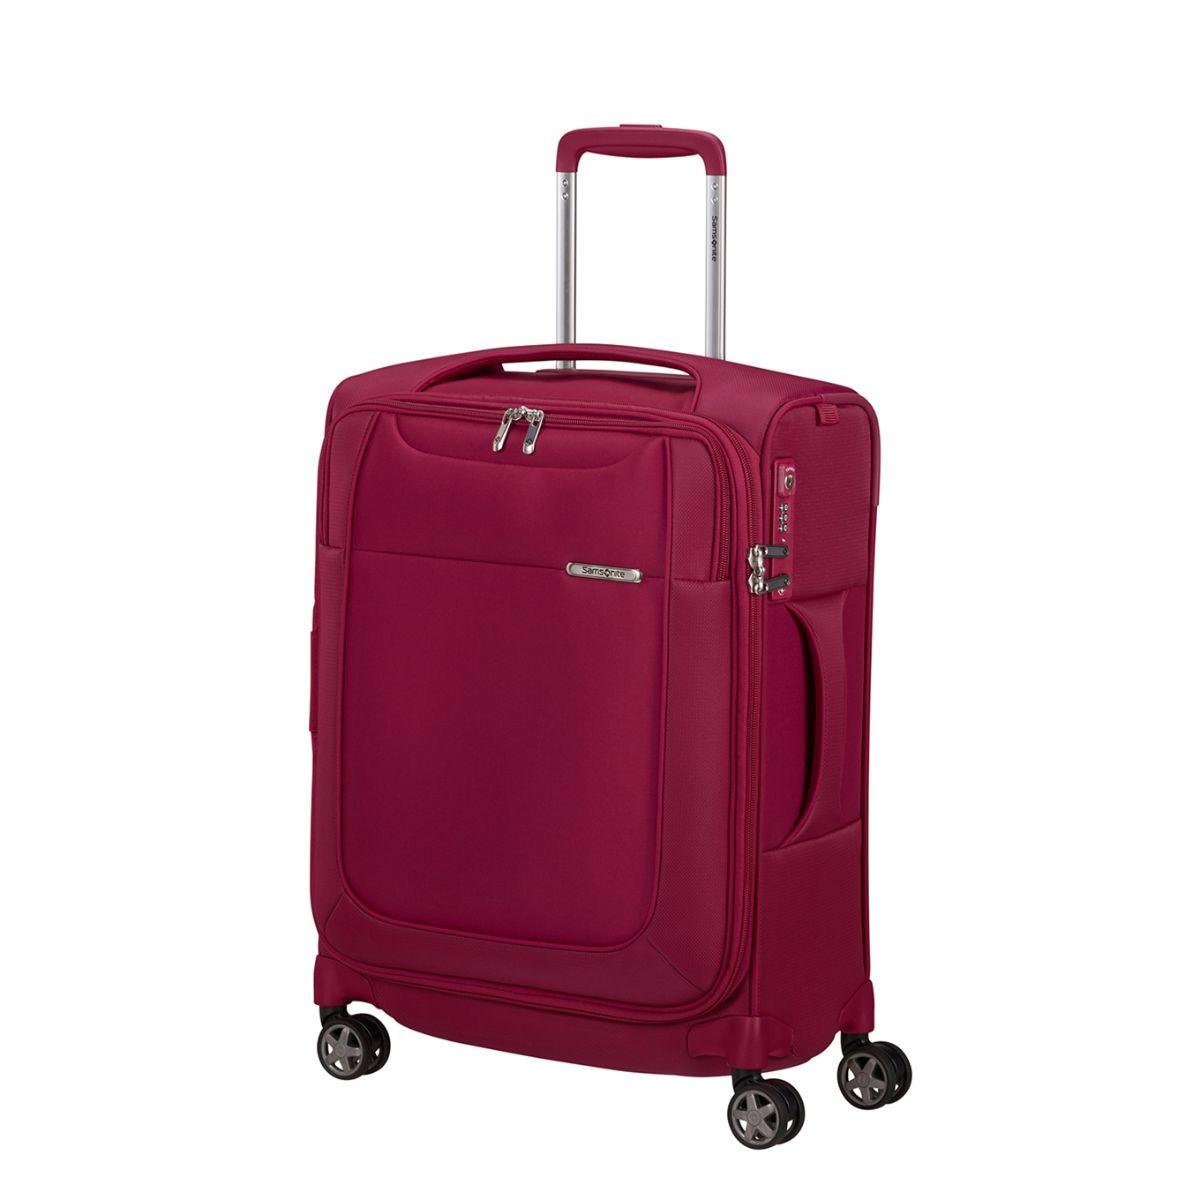 Voorzijde Samsonite D-lite handbagage Roze #kleur_roze